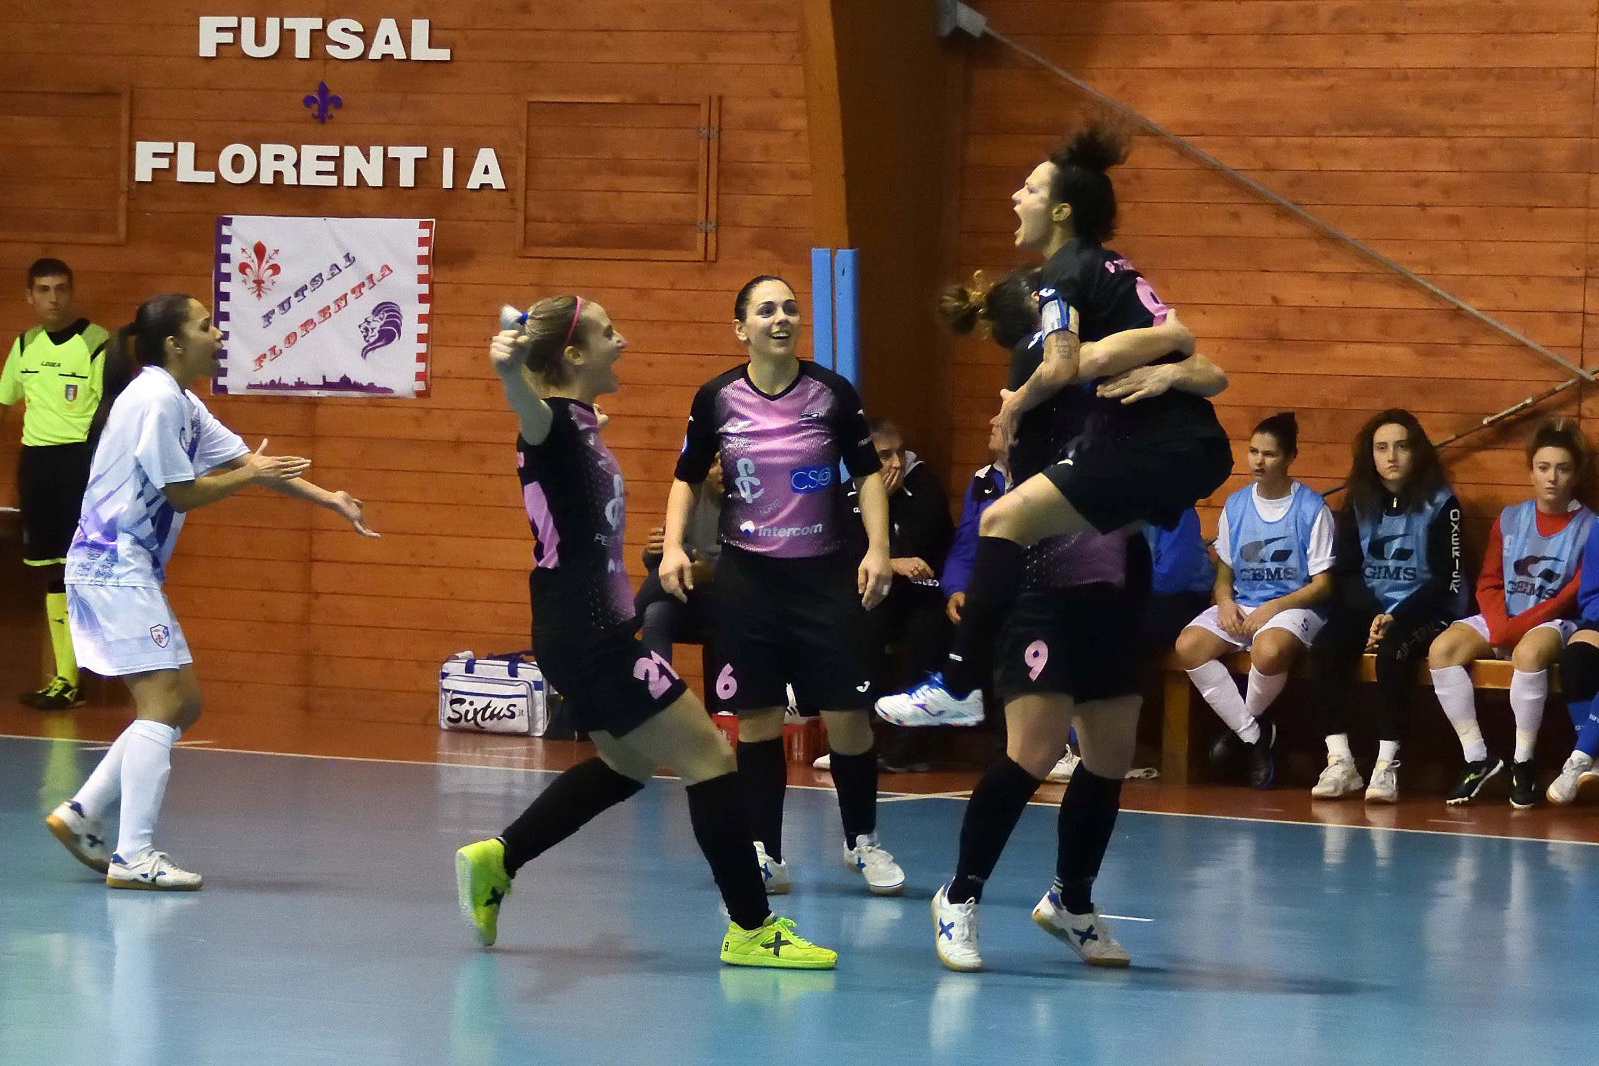 Il CF Pelletterie si aggiudica il derby col Futsal Florentia